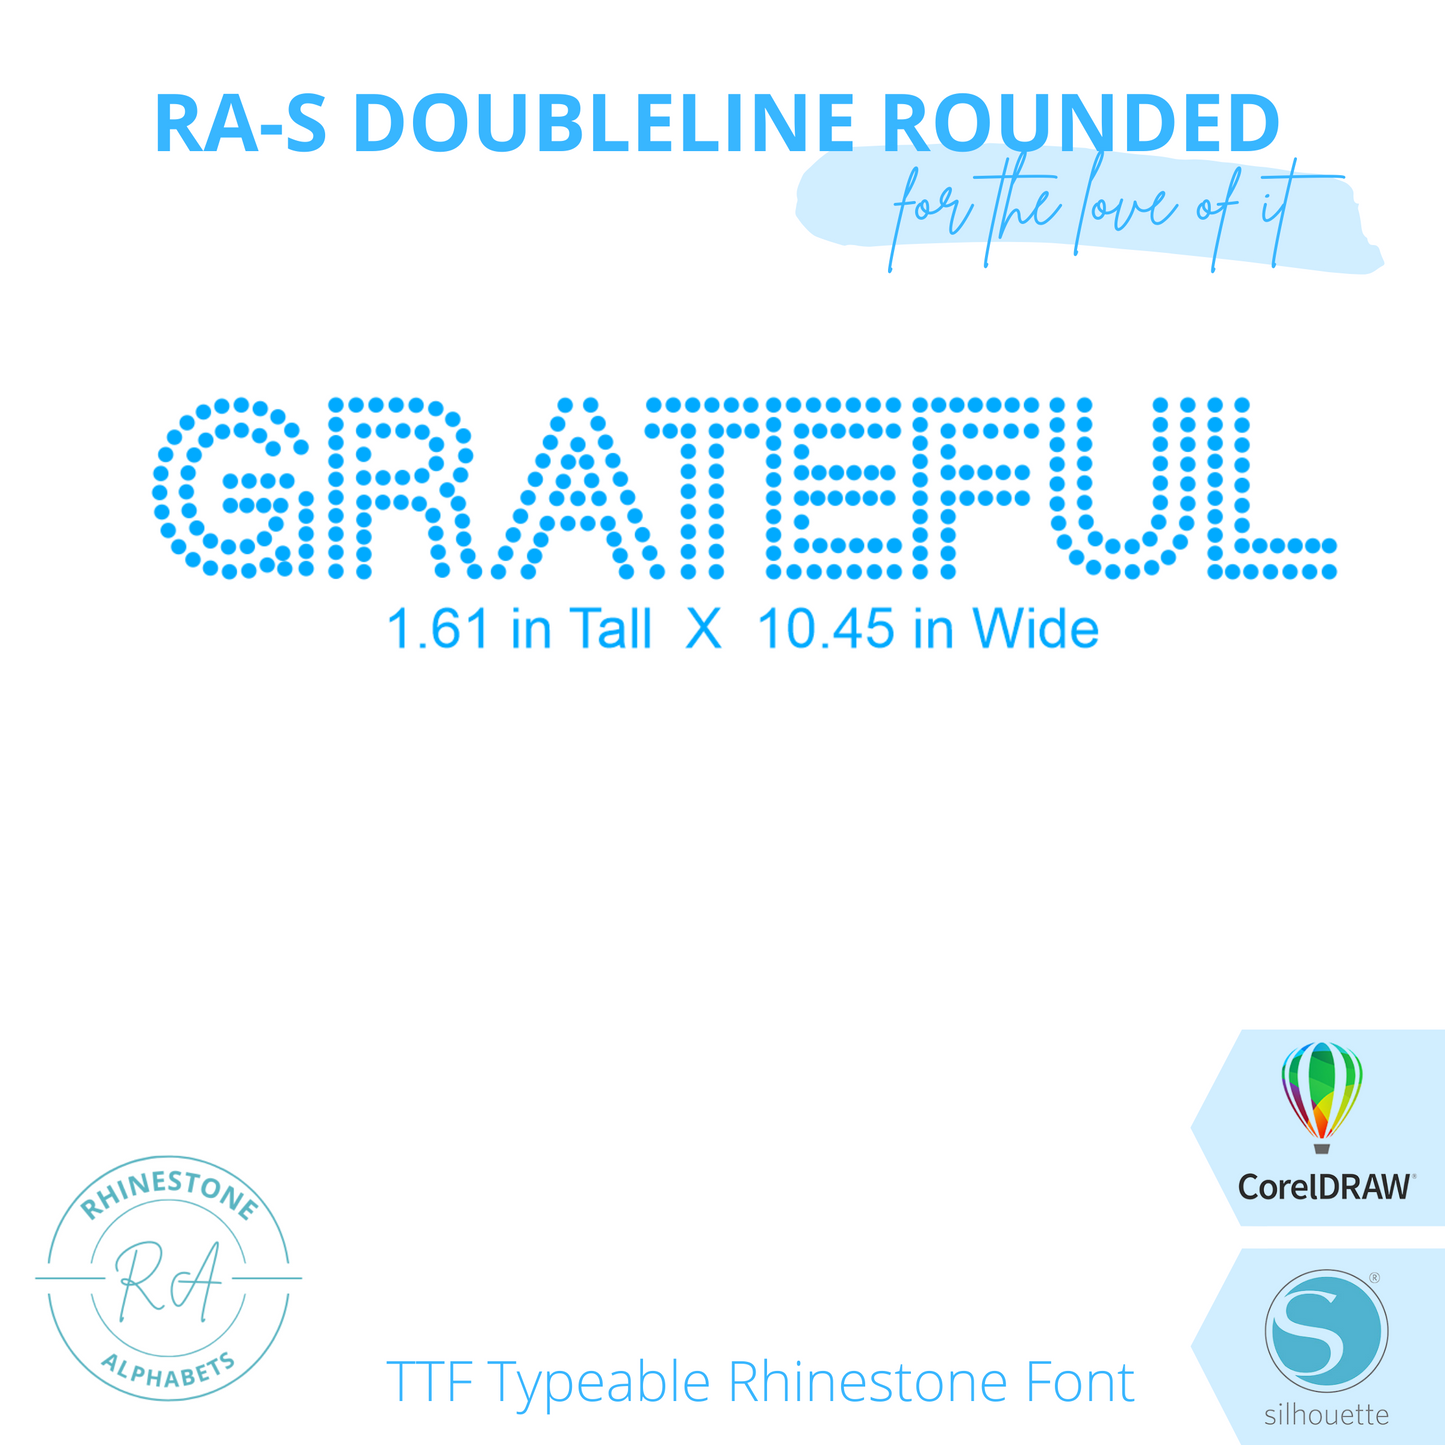 RA-S Doubleline Rounded - RhinestoneAlphabets